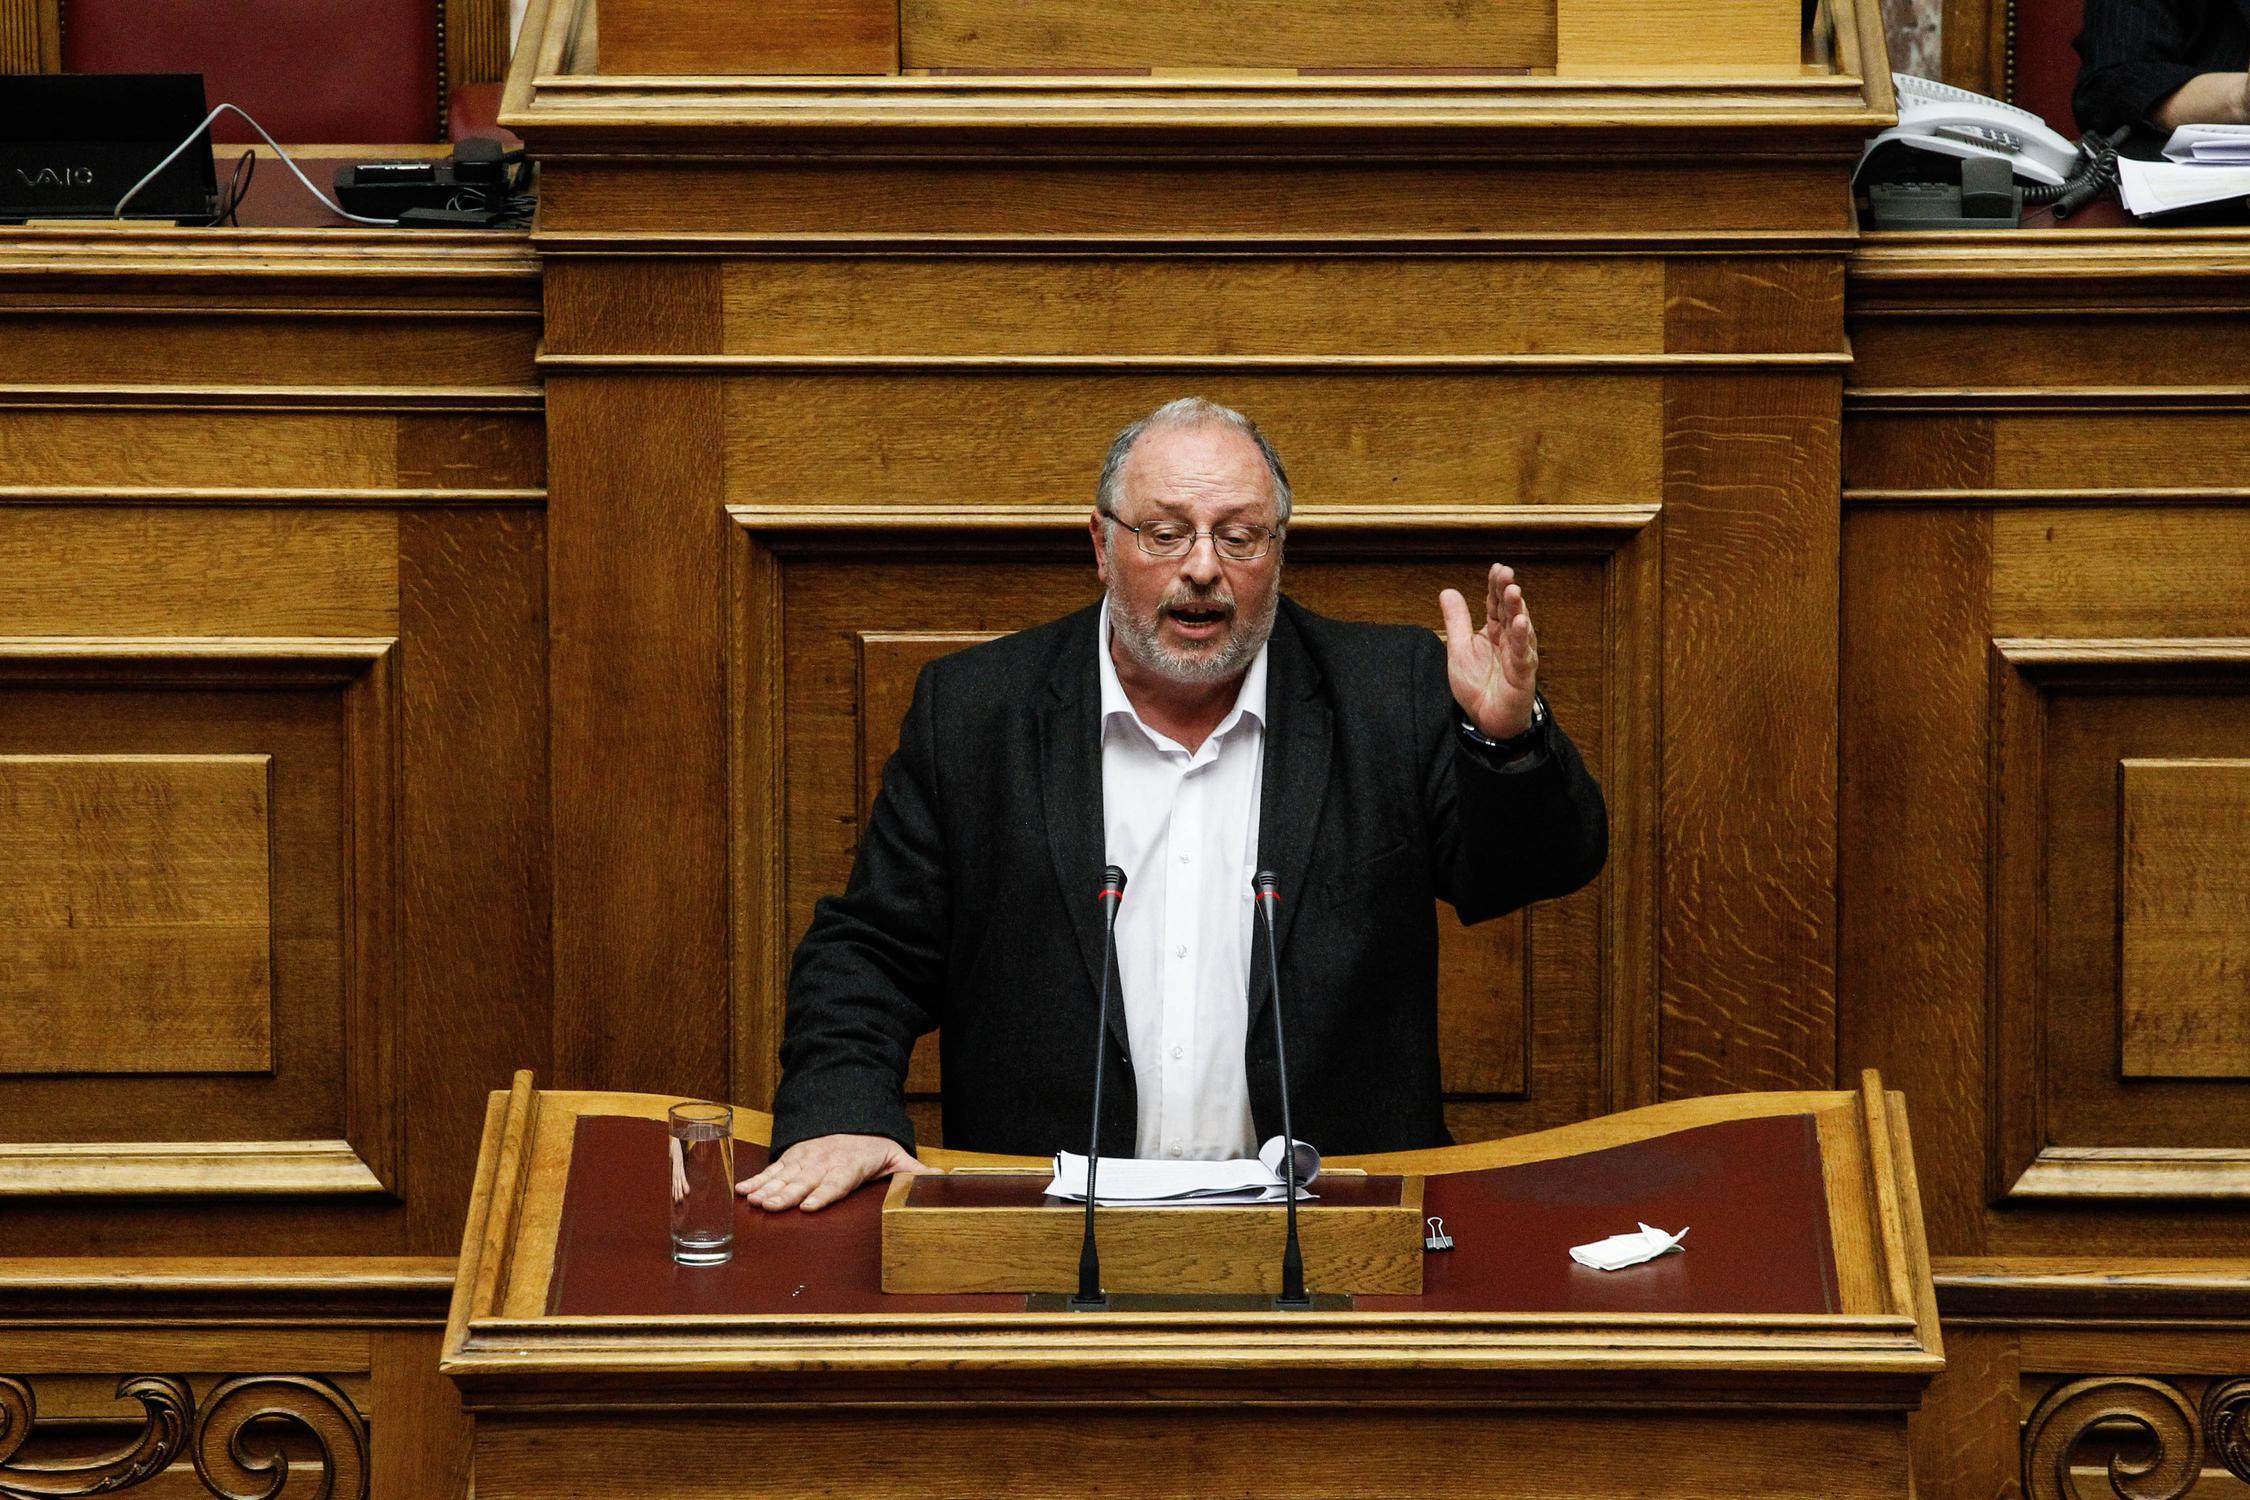 Ήσυχος: Ο ΣΥΡΙΖΑ είχε πολλές εναλλακτικές πέραν του τρίτου μνημονίου